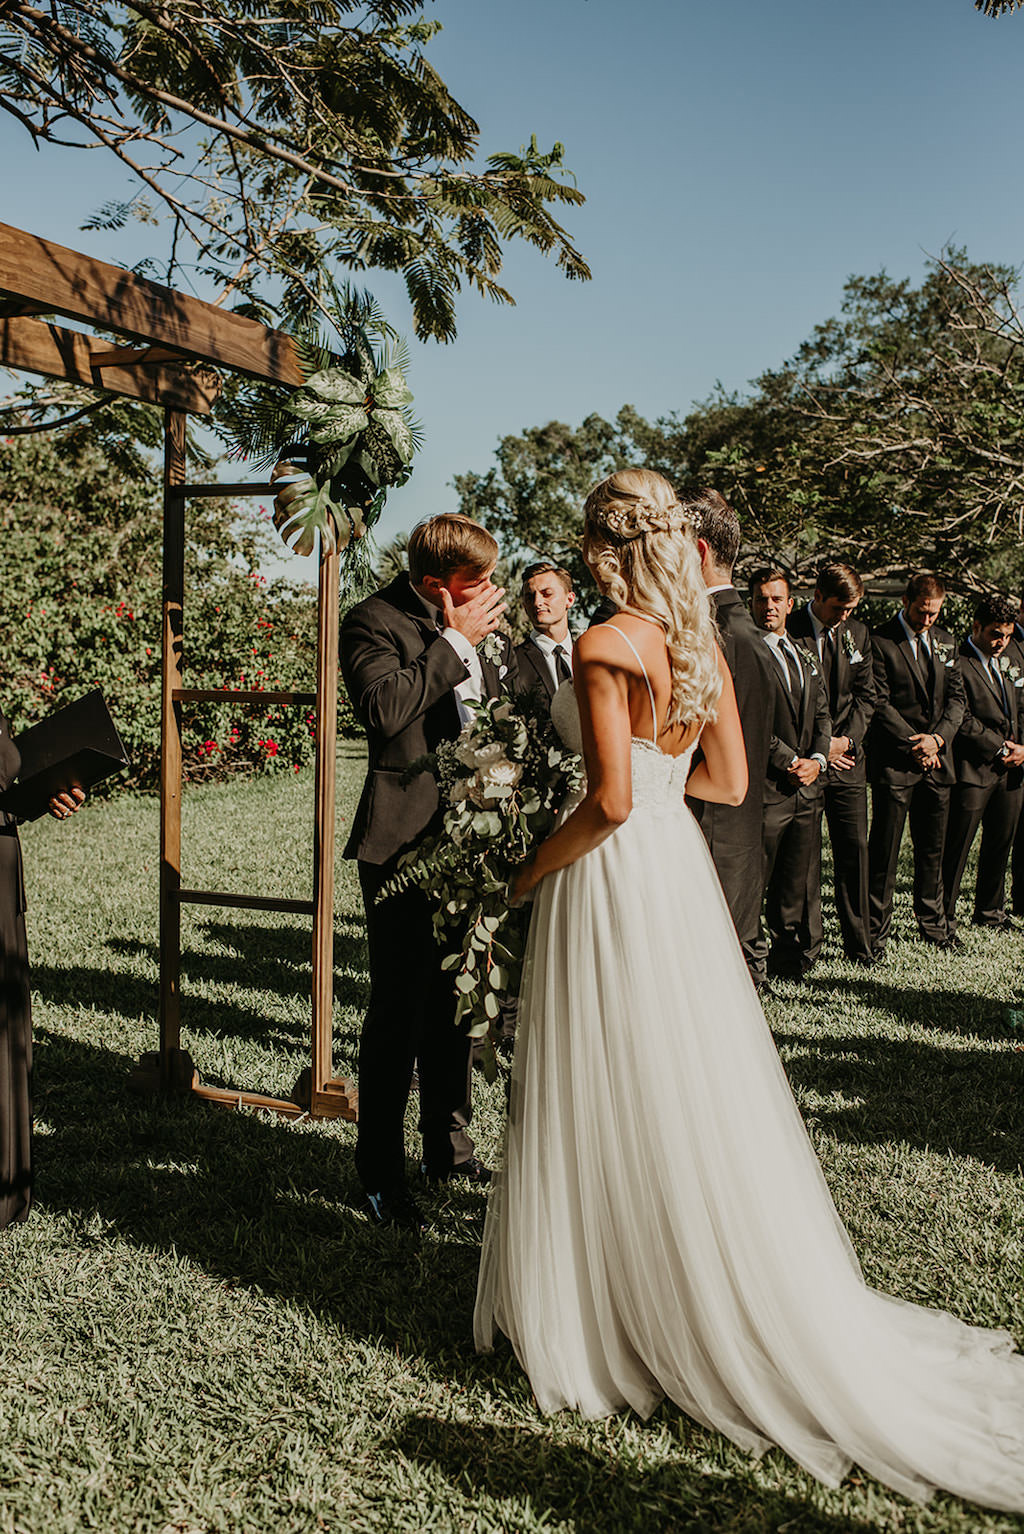 Groom Reaction to Bride Walking Down the Outdoor Wedding Ceremony Aisle | Tampa Wedding Venue Davis Islands Garden Club